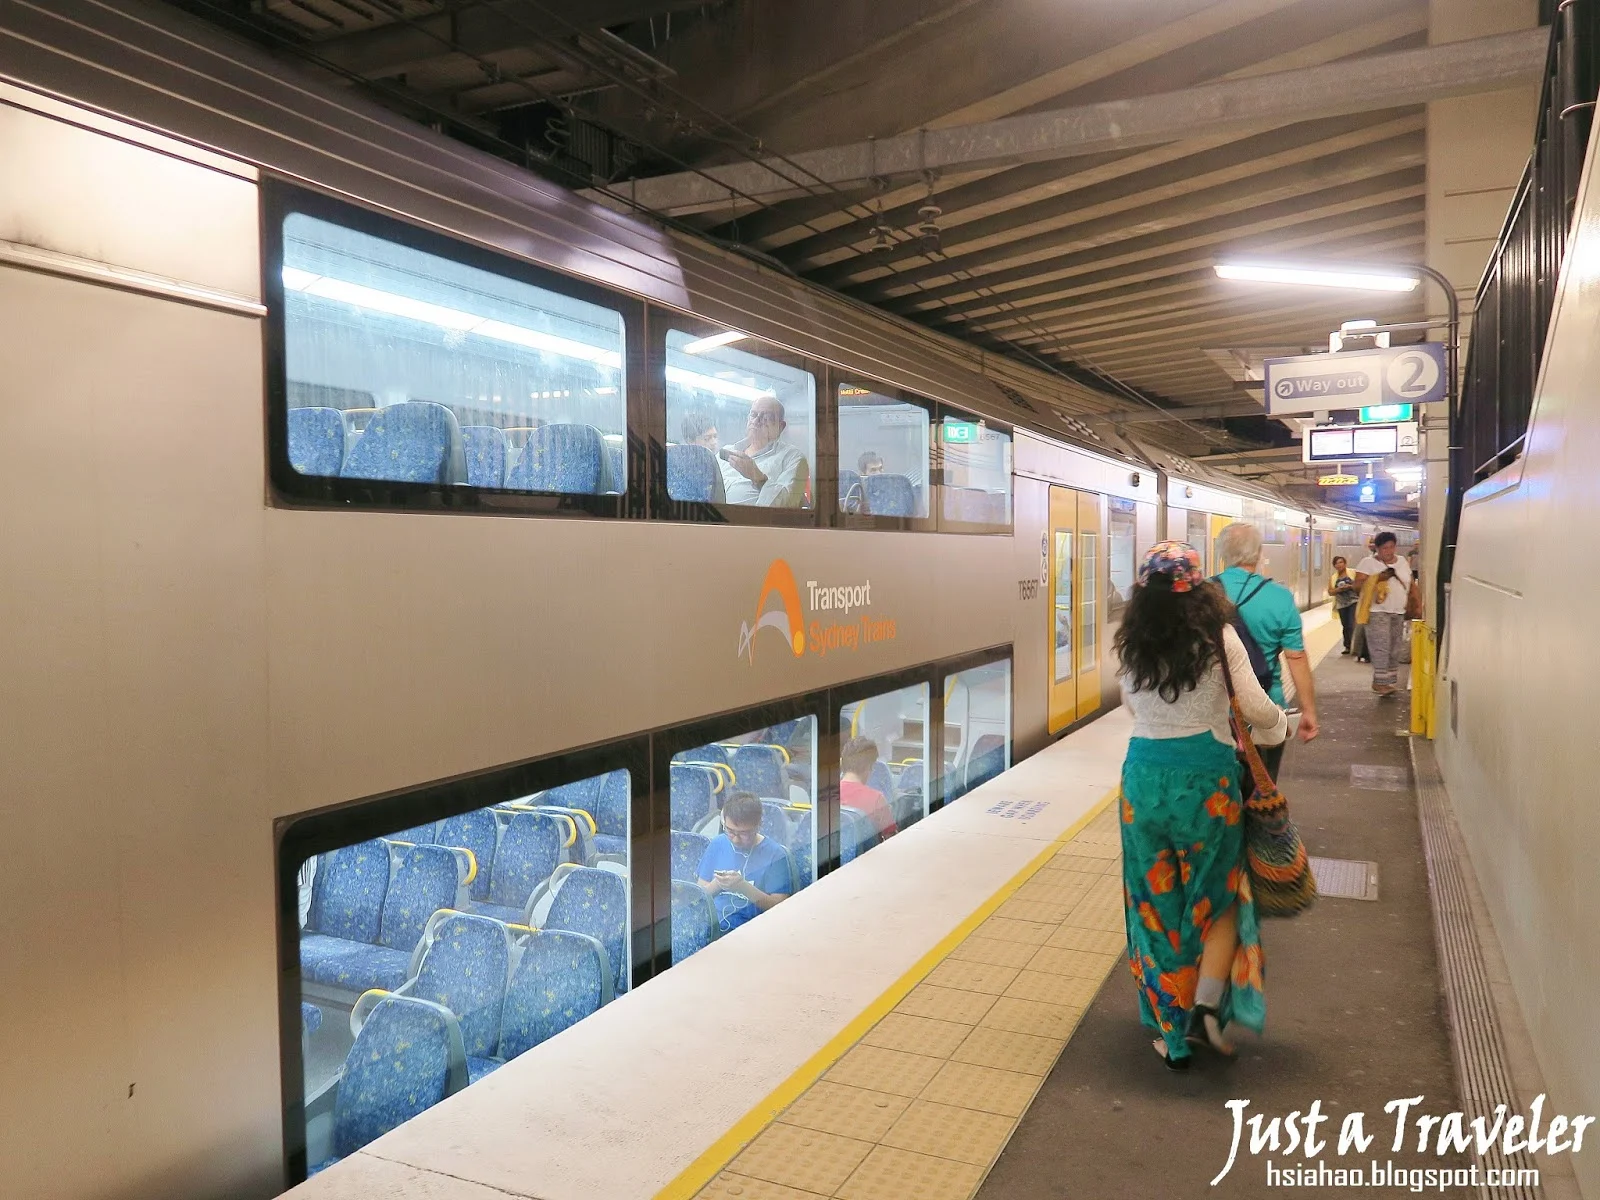 雪梨-雪梨交通-雪梨火車-雪梨輕軌-雪梨巴士-雪梨渡輪-澳寶卡-Sydney-Public-Transport-Bus-Ferry-Train-Opal-Card